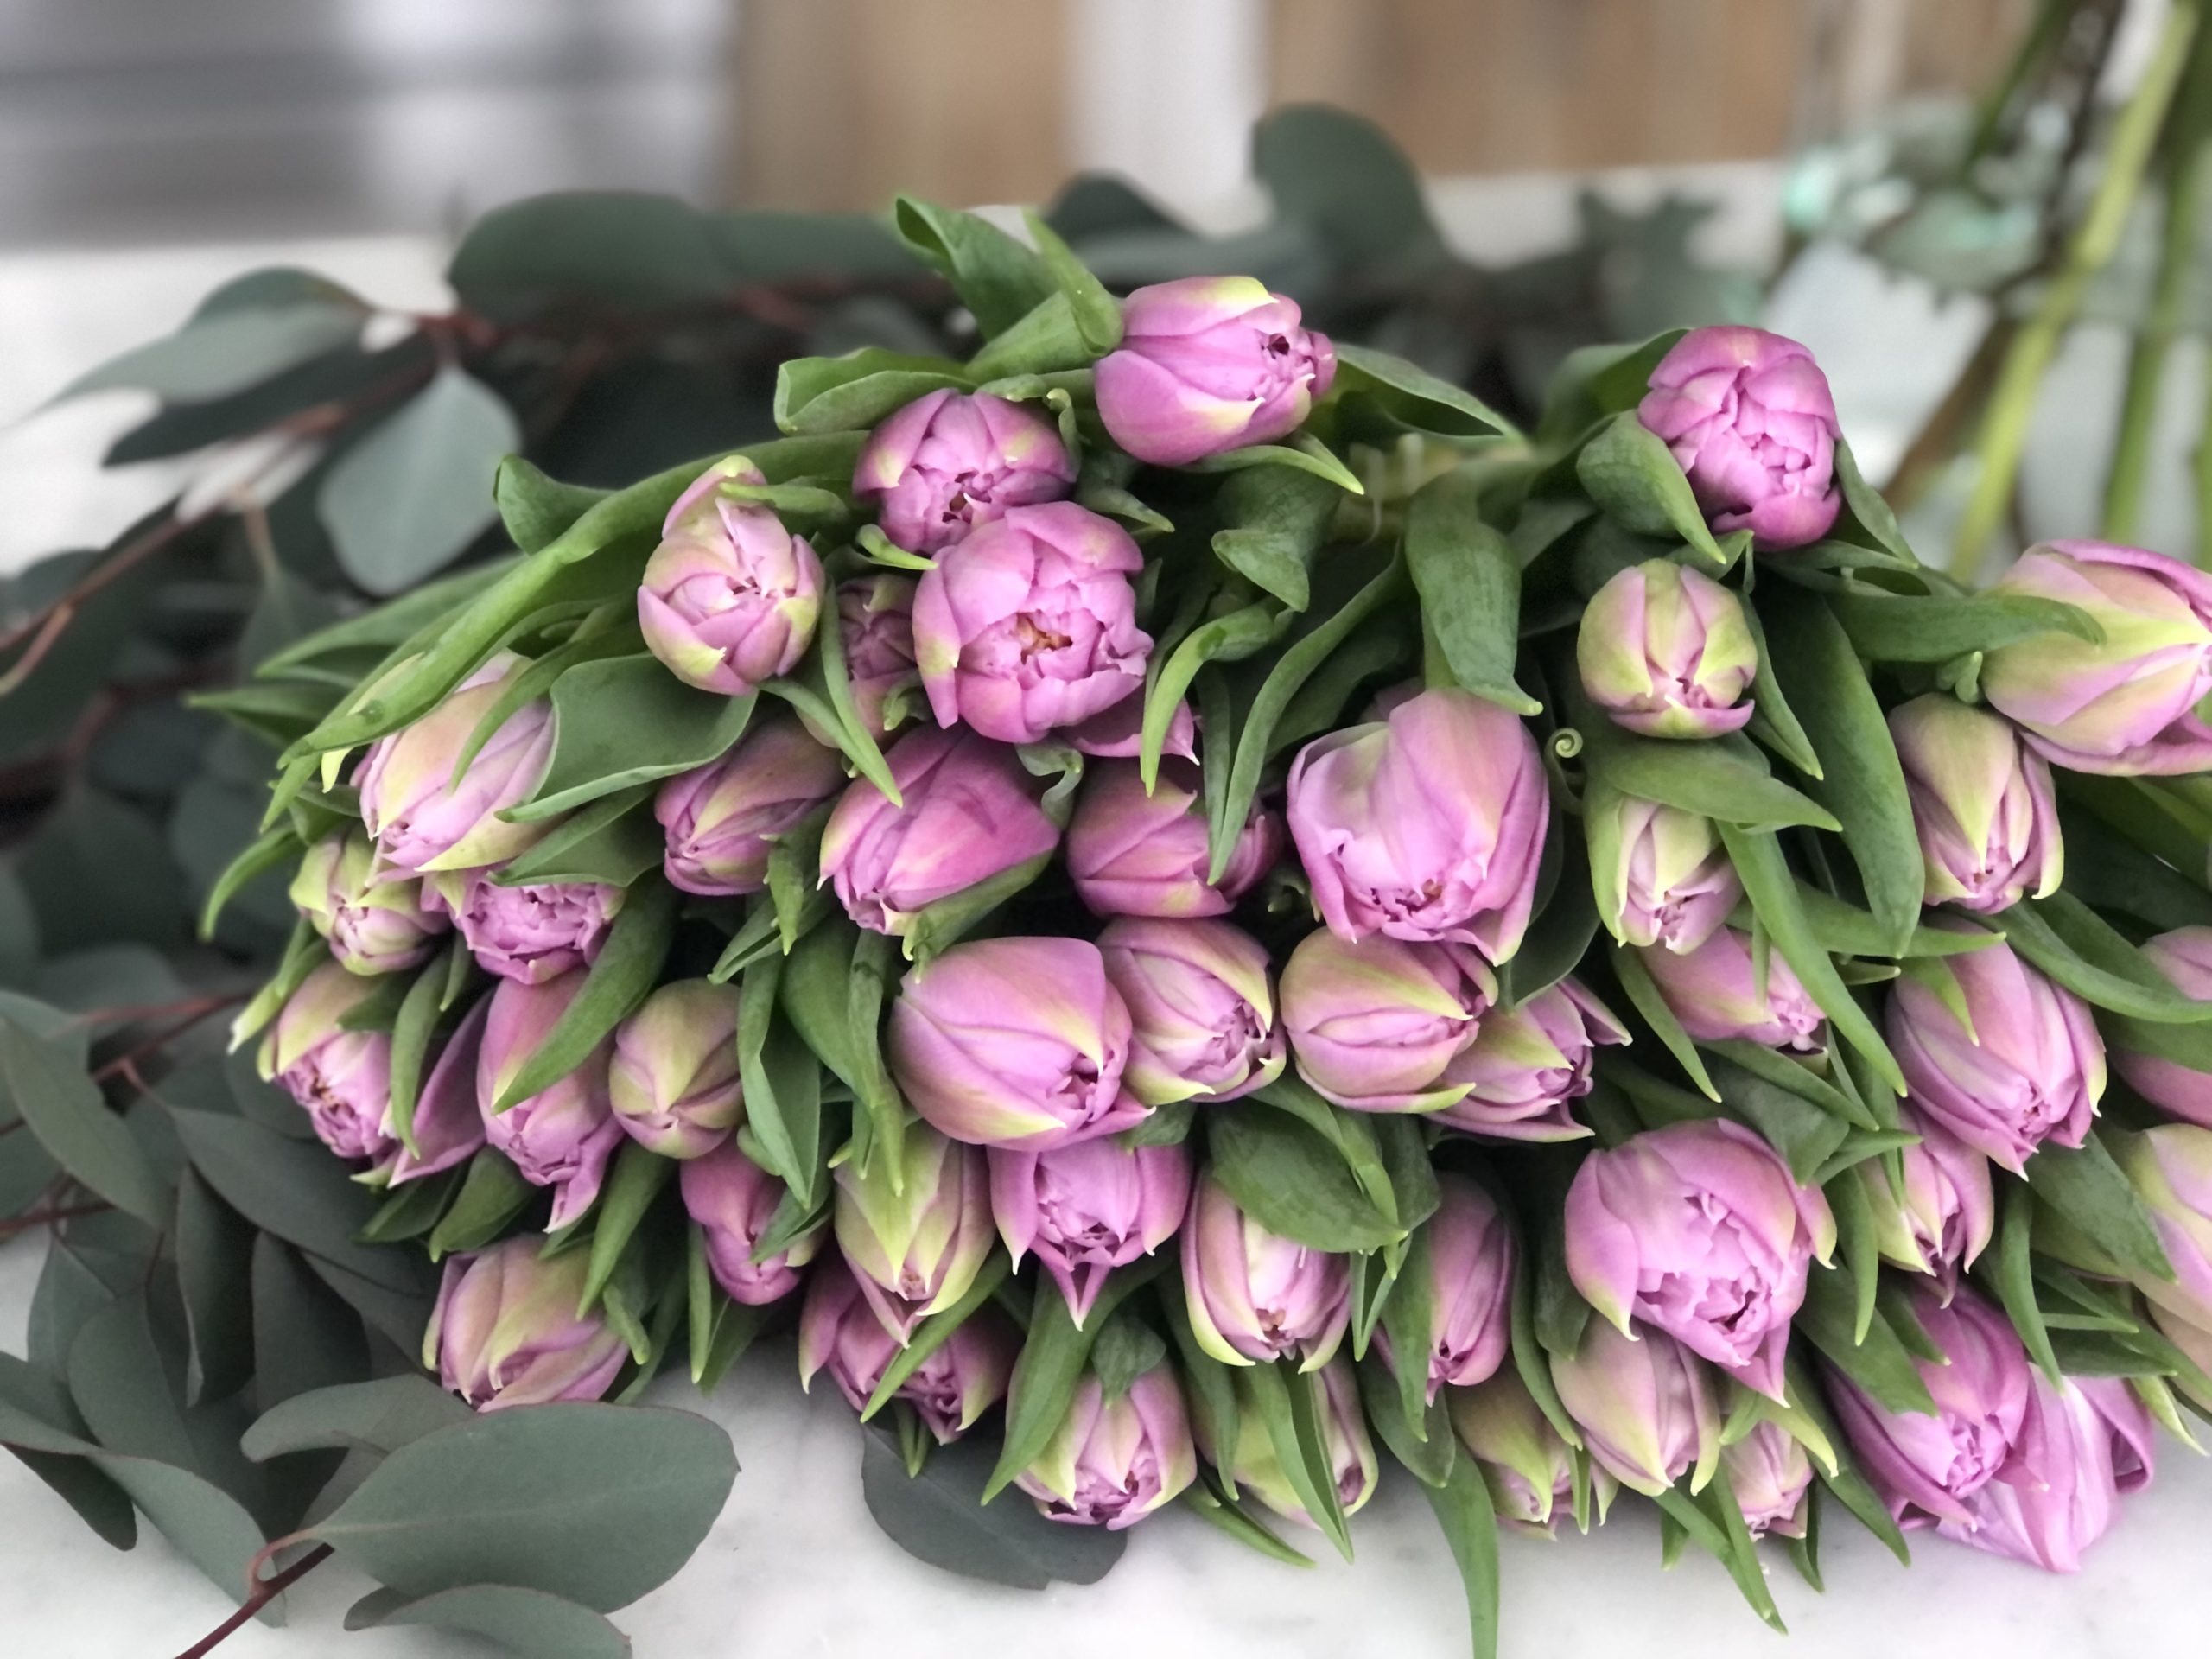 Bundle of pink tulips